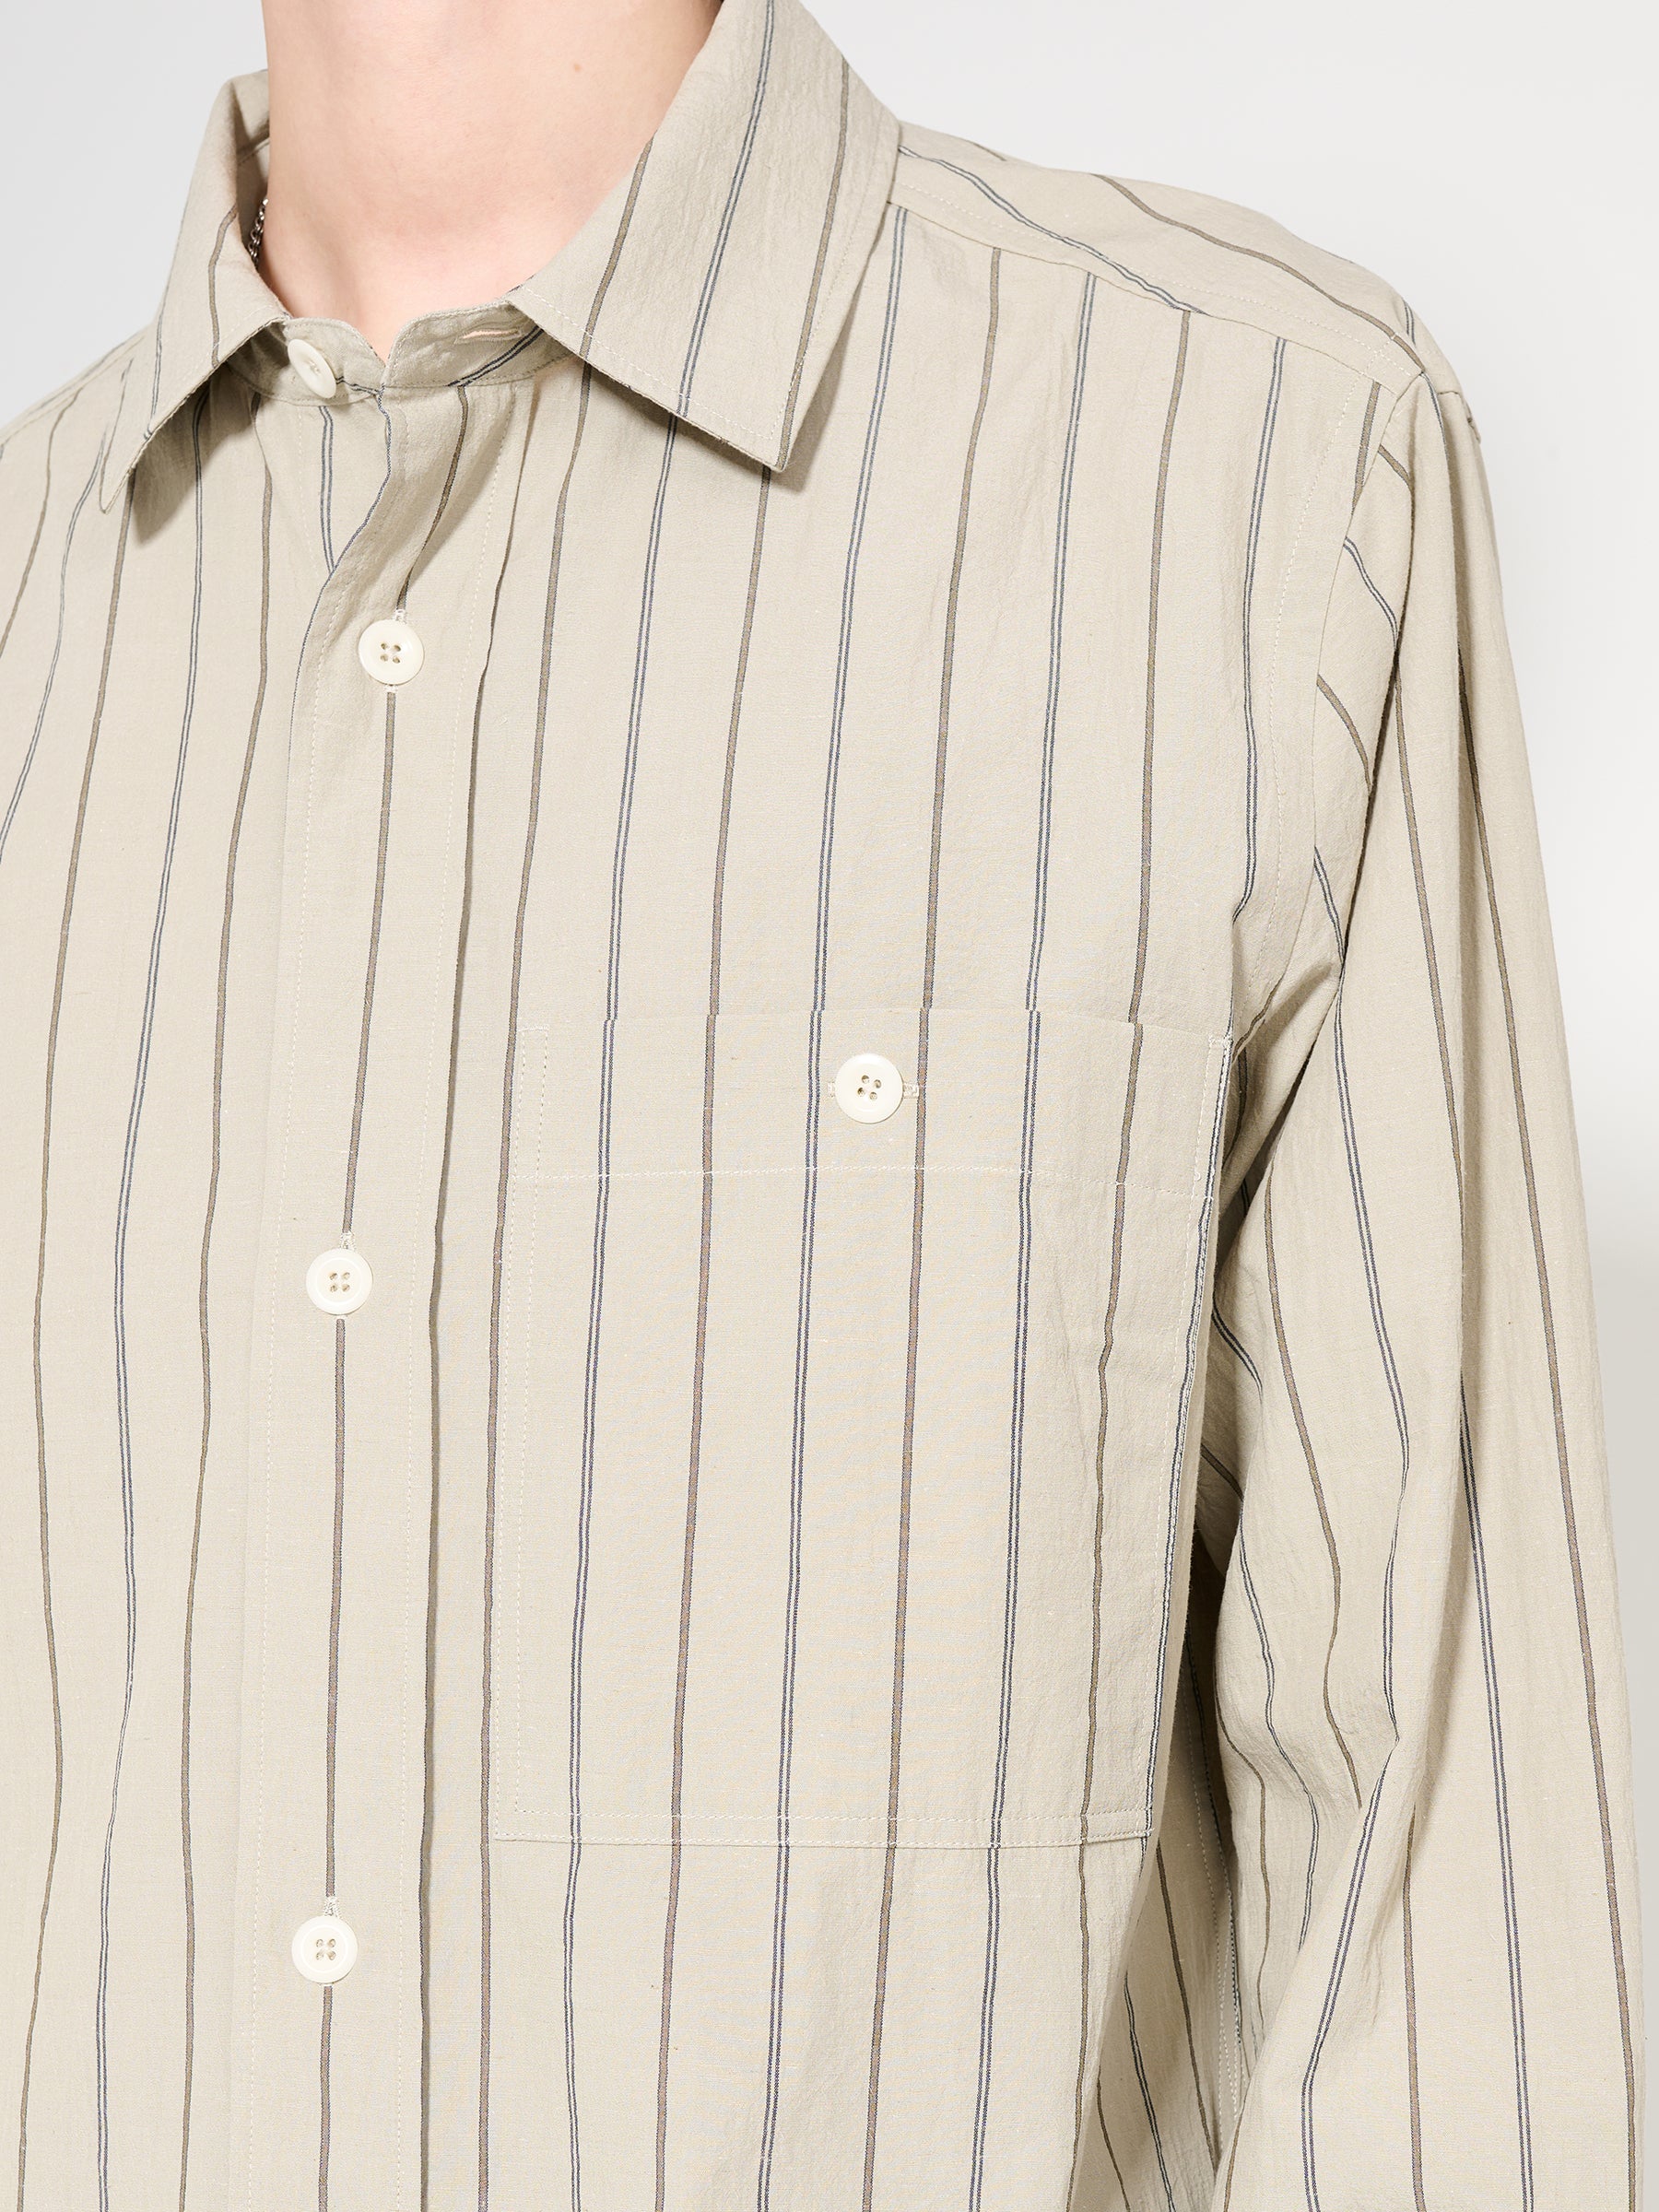 Margaret Howell MHL Overall Shirt Wide Stripe Cotton Linen Stone / Navy / Bark